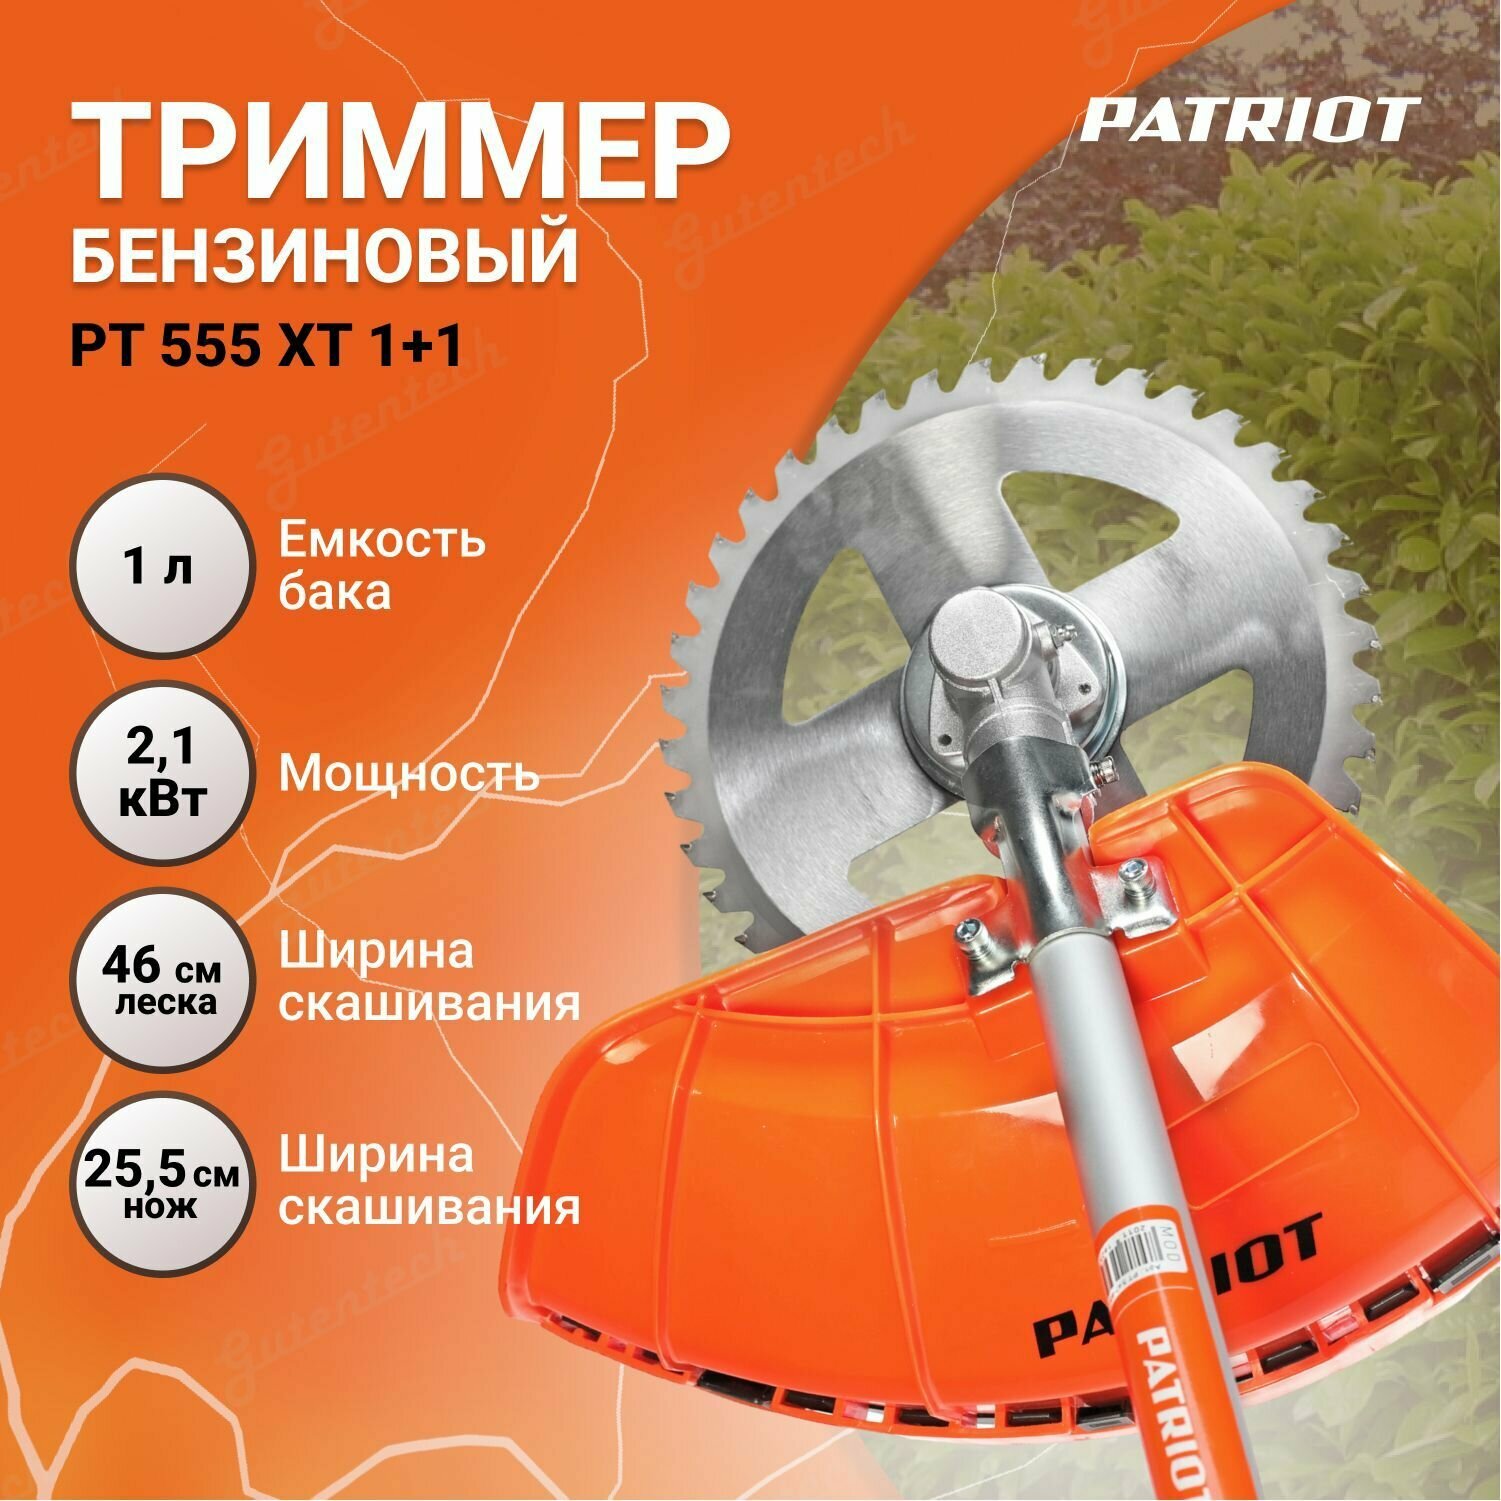 Триммер бензиновый PATRIOT PT 555 XT 1+1 250106231 / 8000 об/мин / 3 л. с.